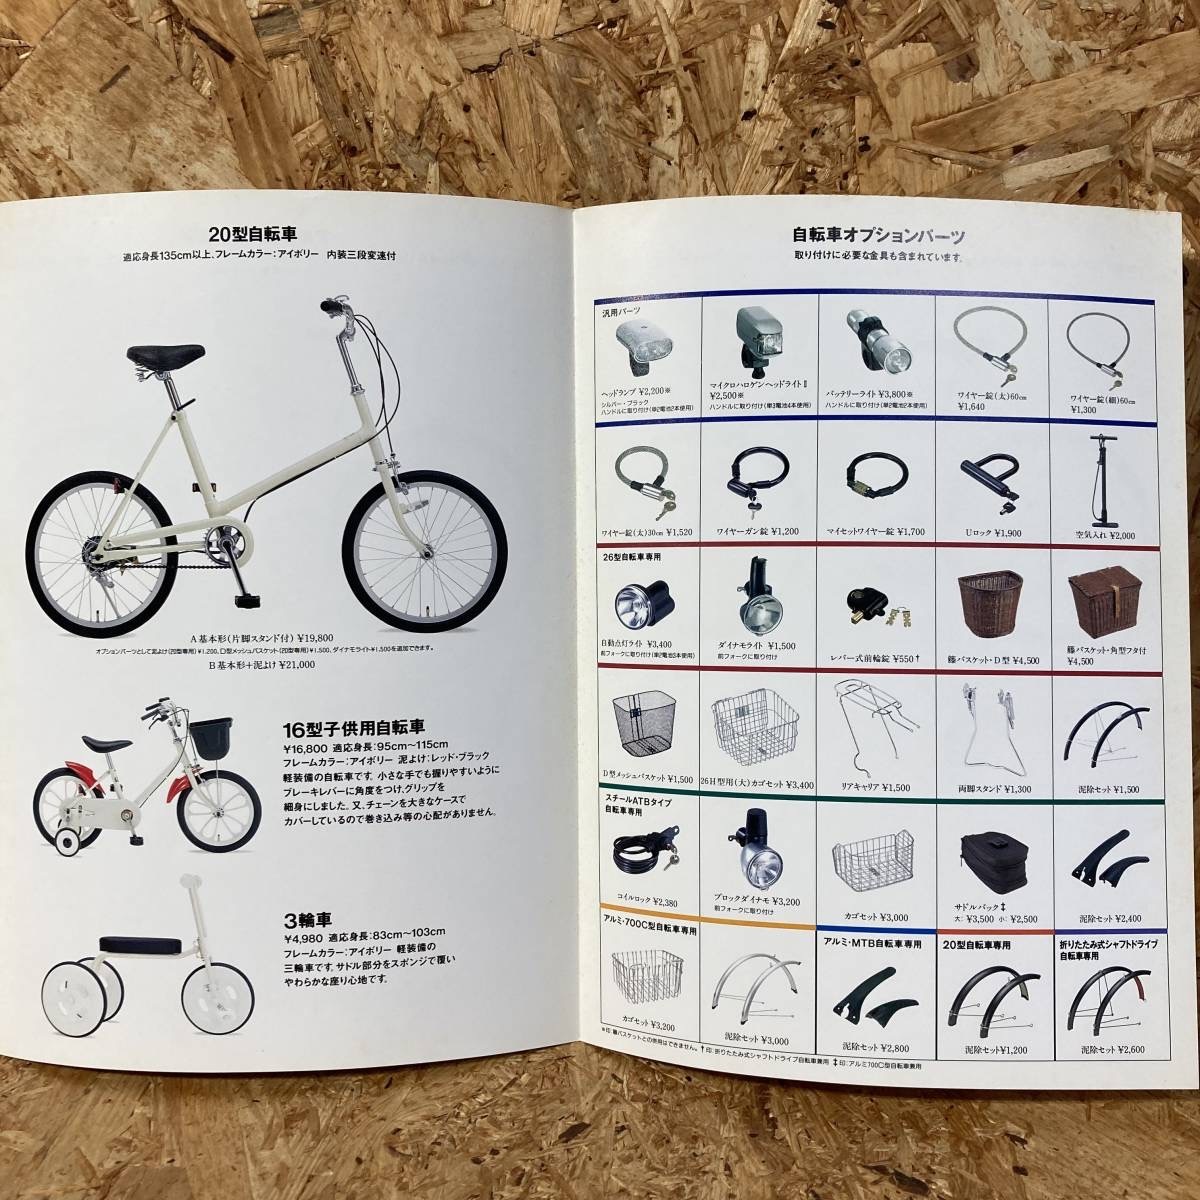  Muji Ryohin каталог 1997 год велосипед 